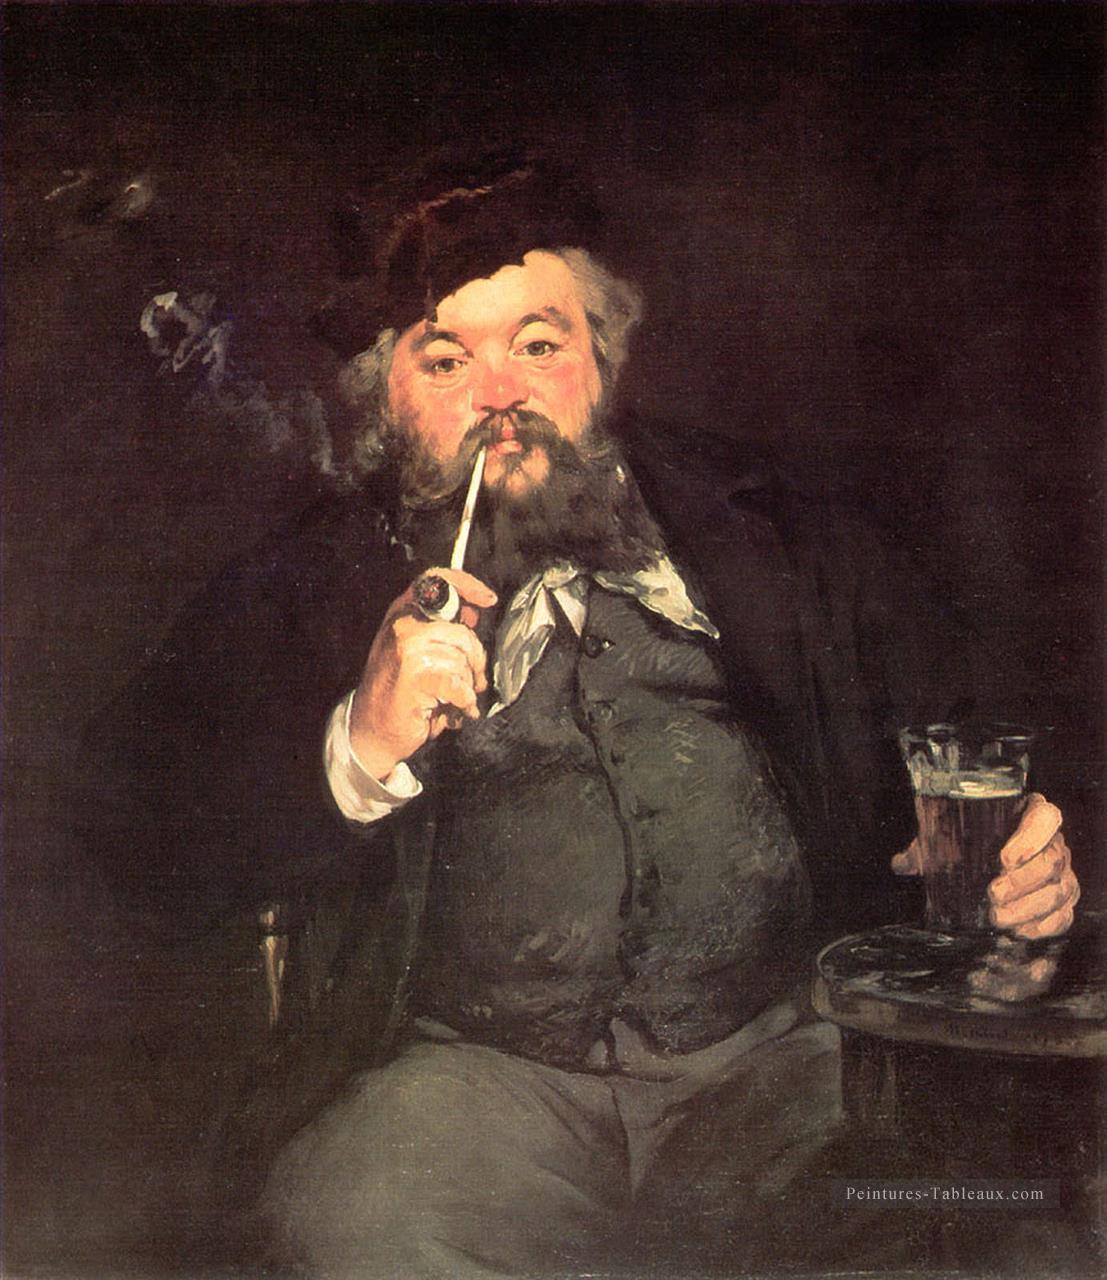 Le Bon Bock Un bon verre de bière réalisme impressionnisme Édouard Manet Peintures à l'huile